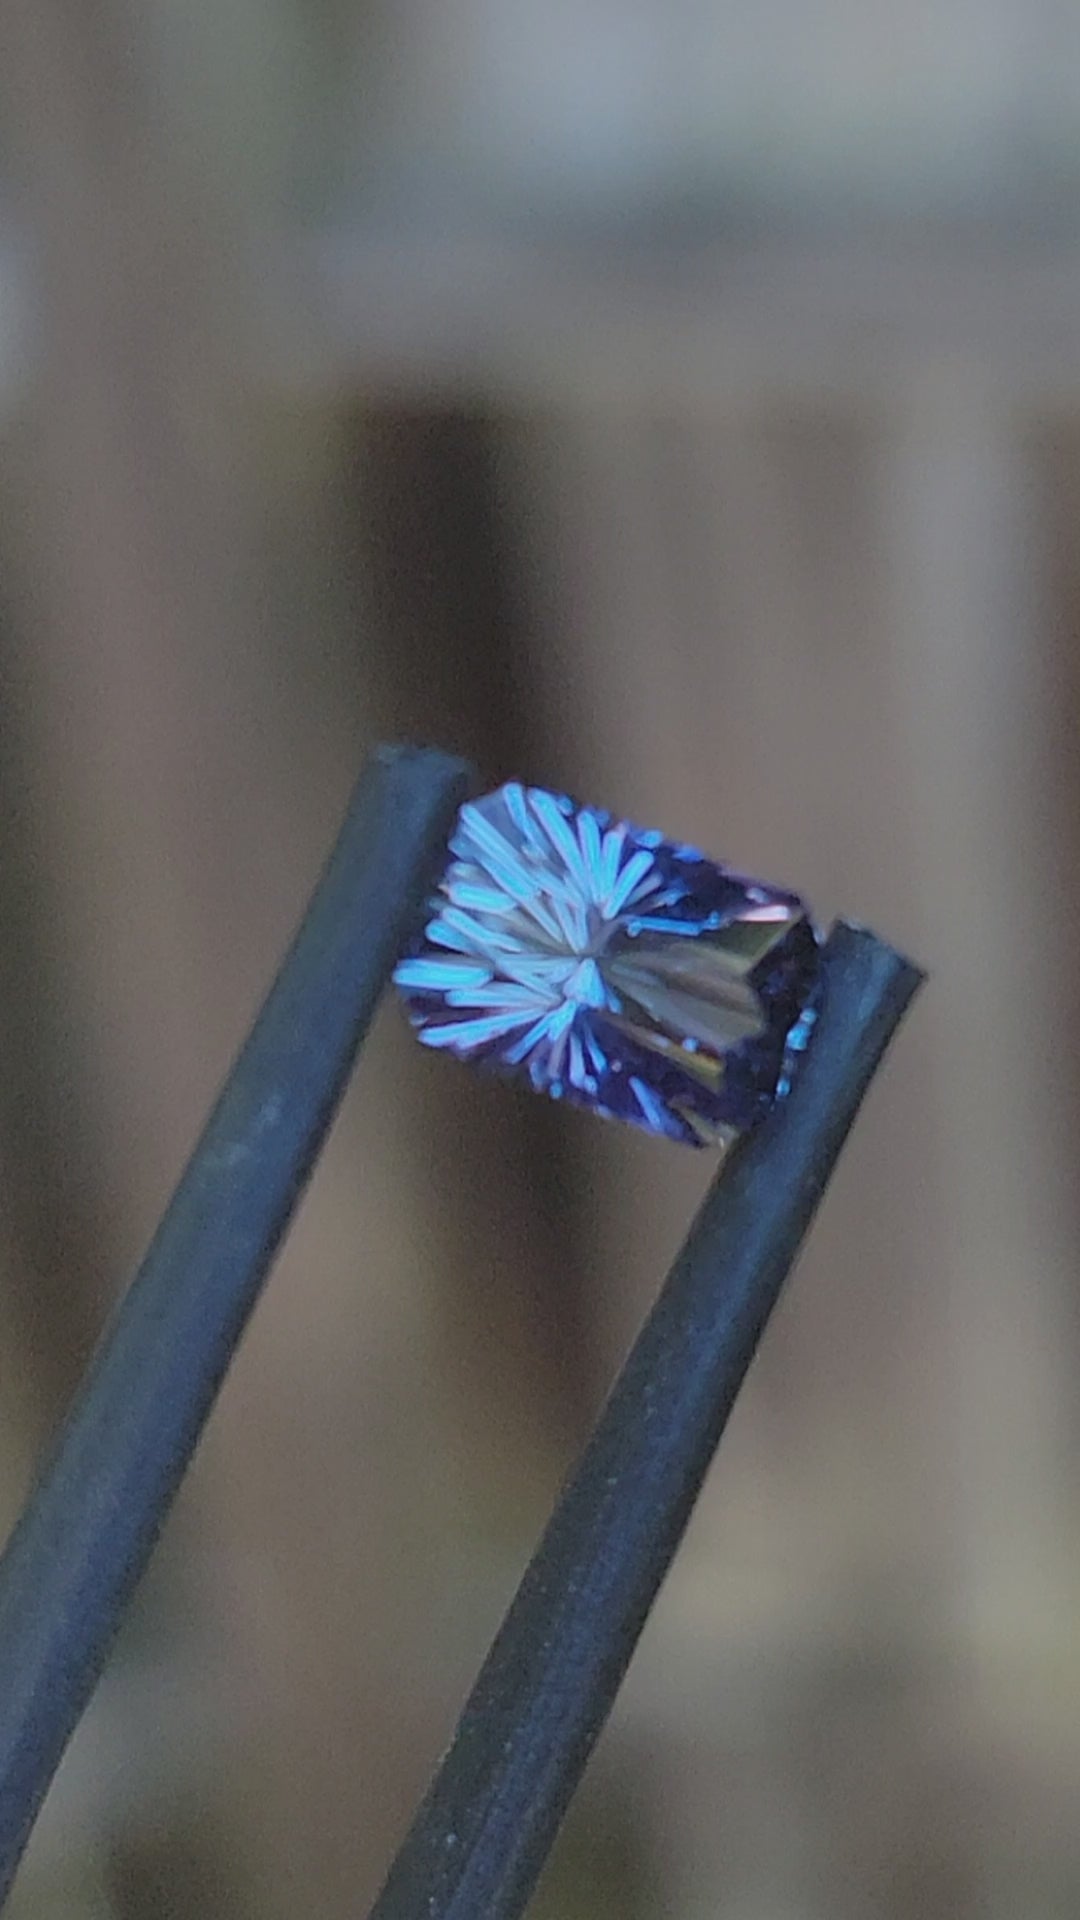 Octogone saphir Umba violet bleuté de 1,2 carat - Taille fantaisie, 7,3 x 4,8 mm